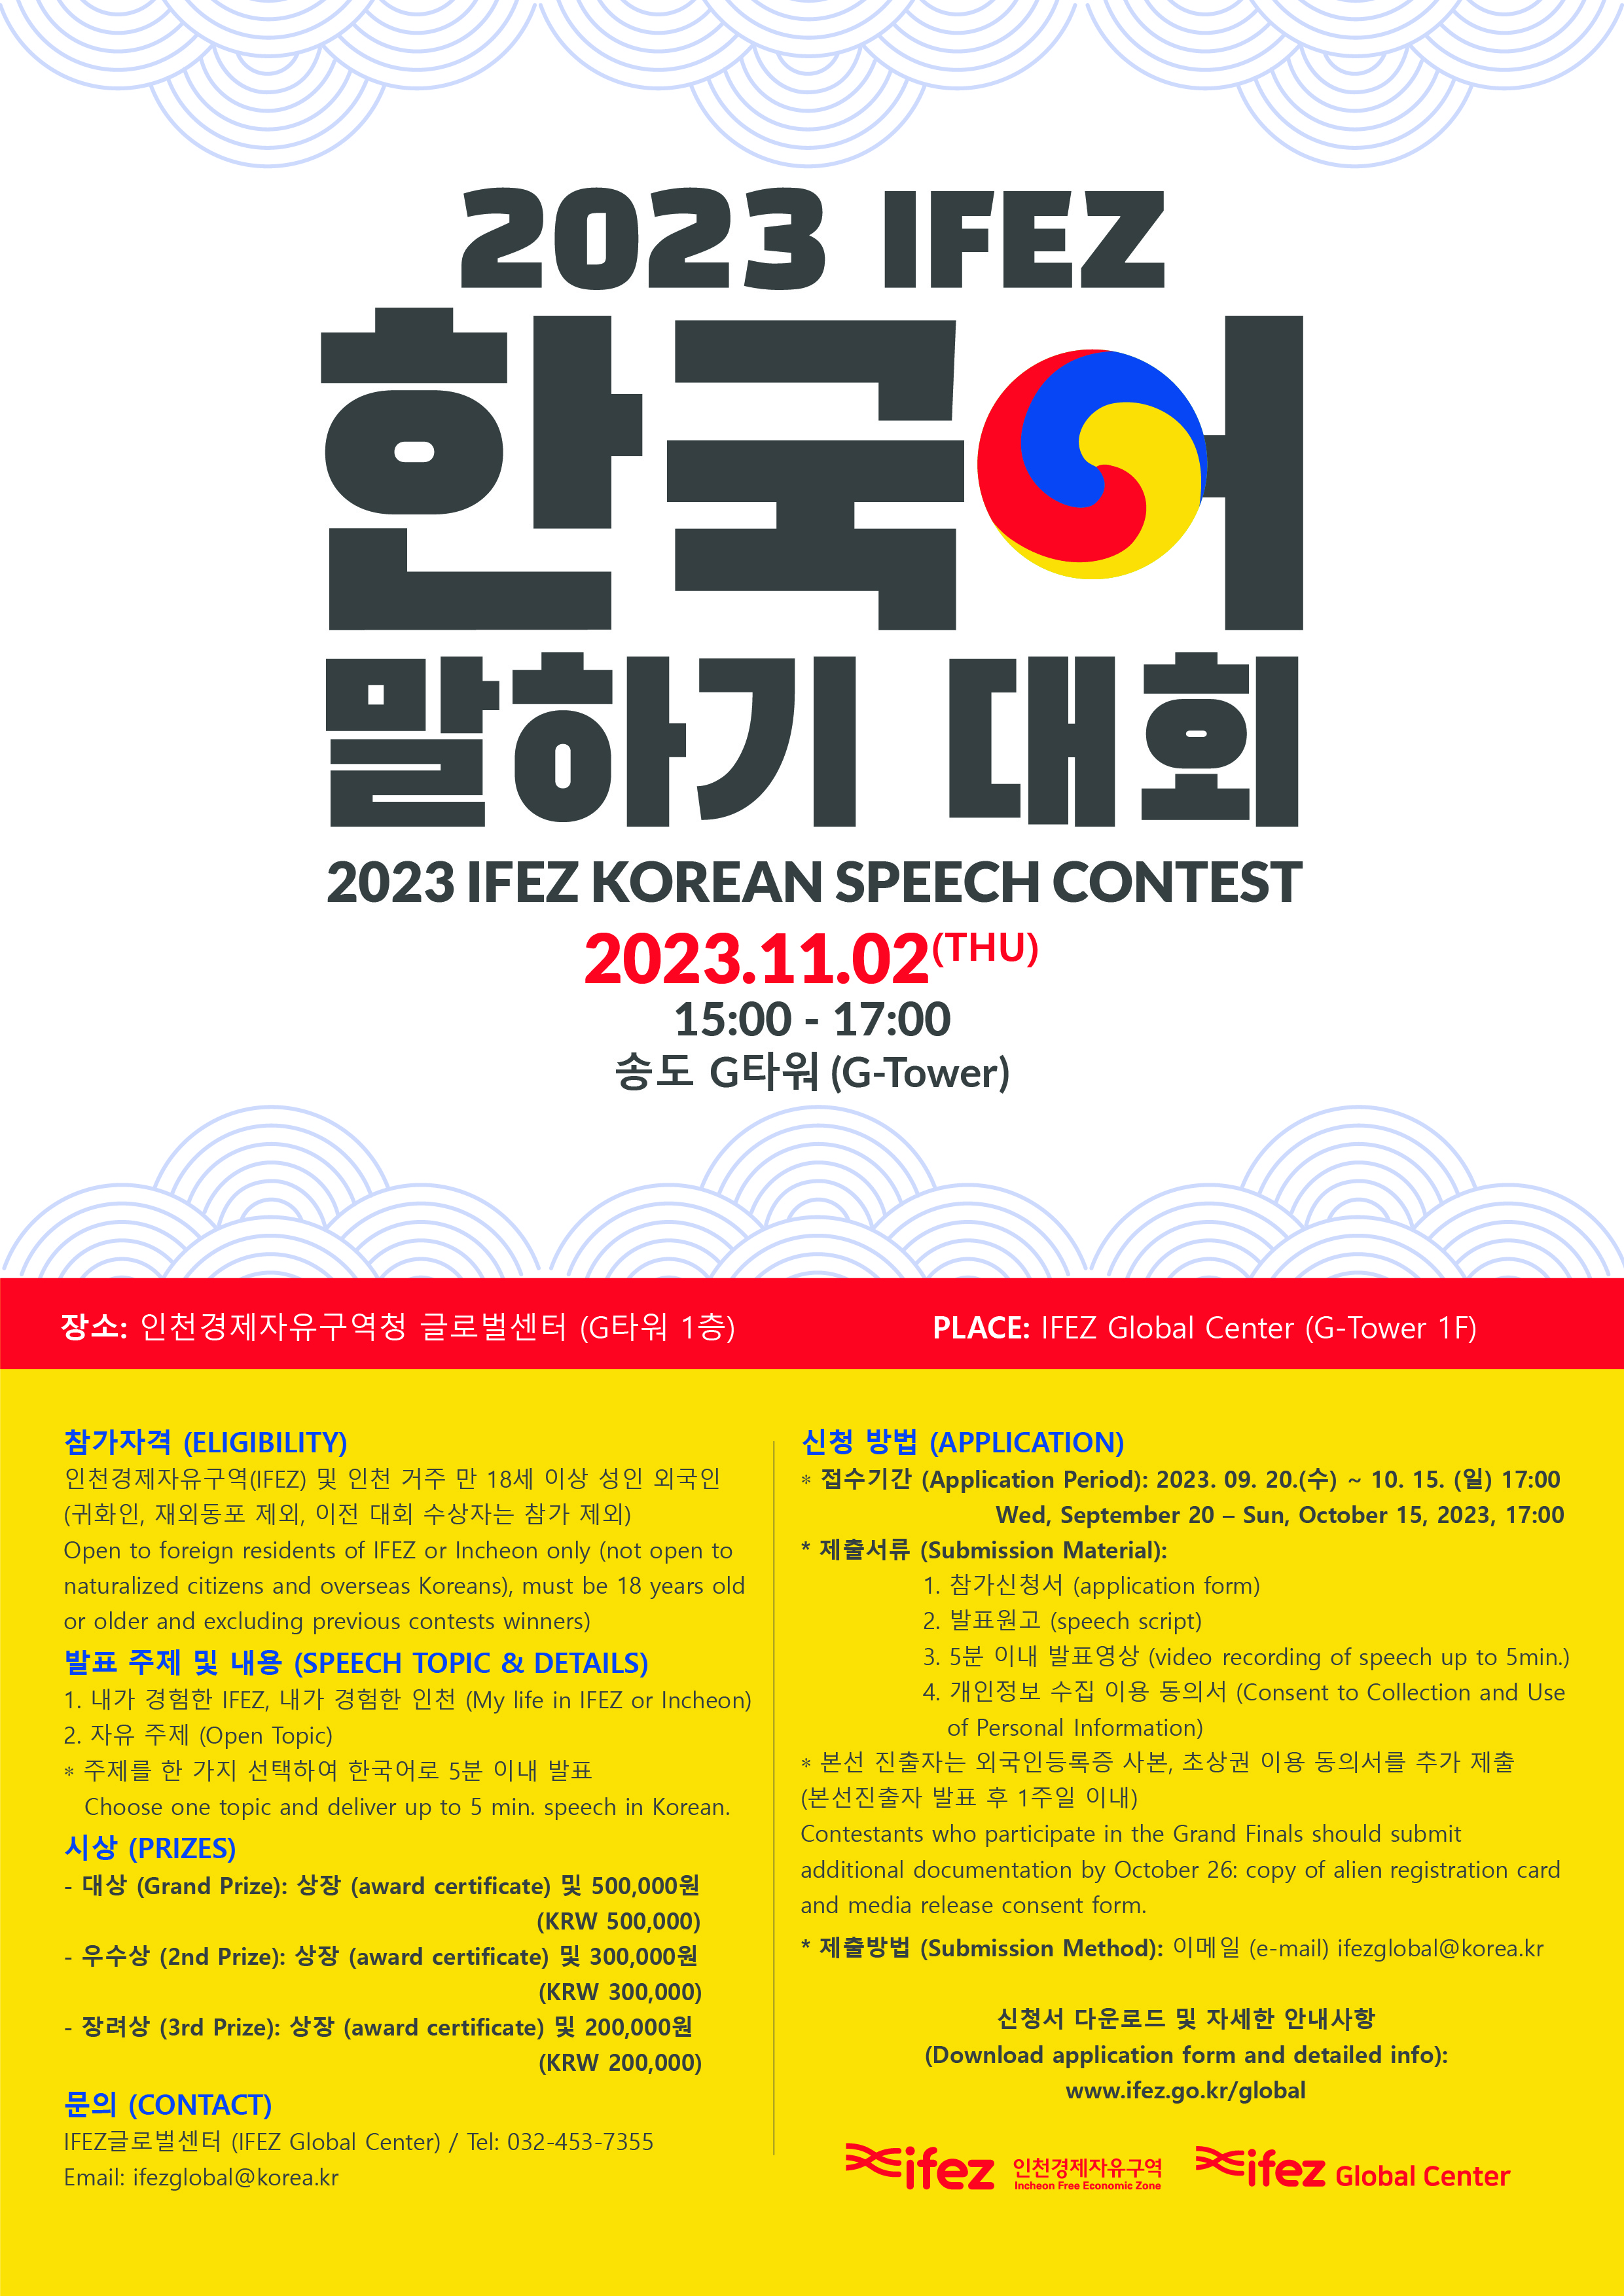 2023 IFEZ  한국어 말하기 대회 2023 IFEZ KOREAN SPEECH CONTEST 2023.11.02 (THU) 15:00 - 17:00 송도 G 타워 (G-Tower) 장소 : 인천경제자유구역청 글로벌센터 (G타워 1층) PLACE : IFEZ Global Center (G-Tower 1F) 참가자격 (ELIGIBILITY) 인천경제자유구역(IFEZ) 및 인천 거주 만 18세 이상 성인 외국인 (귀화인, 재외동포 제외, 이전 대회 수장자는 참가 제외) Open to foreign residents of IFEZ or Incheon only (not open to naturalized citizens and overseas Koreans), must be  18 years old or older and excluding previous contents winners) 발표 주제 및 내용 (SPEECH  TOPIC & DETAILS) 1. 내가 경험한 IFEZ, 내가 경험한 인천 (My life i IFEZ or Incheon) 2. 자유 주제 (Open Topic) * 주제를 한 가지 선택하여 한국어로 5분 이내 발표 Choose one topic and deliver up to 5 min. speech in Korea. 시상 (PRIZES) -대상 (Grand Prize): 상장 (award certificate) 및 500,000원 (KRW 500,000) - 우수상 (2nd Prize) : 상장 (award certificate) 및 300,000원 (KRW 300,000) - 장려상 (3rd Prize): 상장 (award certificate) 및 200,000원 (KRW 200,000) 문의 (CONTACT) IFEZ 글로벌센터 (IFEZ Global Center) / Tel: 032-453-7355 Email : ifezglobal@korea.kr 신청 방법 (APPLICATION) *접수기간 (Application Period) : 2023. 09. 20.(수) ~ 10. 15. (일) 17:00 Wed, September 20 - Sun, October 15, 2023, 17:00 * 제출서류 (Submission Material): 1. 참가신청서 (application form) 2. 발표원고 (speech script) 3. 5분 이내 발표영상 (video recording of speech up to 5min.) 4. 개인정보 수집 이용 동의서 (Consent to Collection and Use of Personal Information) *본선 진출자는 외국인등록증 사본, 초상권 이용 동의서를 추가 제출 (본선진출자 발표 후 1주일 이내) Contestants who participate in the Grand Finals should submit additional documentation by Ocotober 26: copy of alien registration card and media release contest form. * 제출방법 (Submission Method) : 이메일 (e-mail) ifezglobal@korea.kr 신청서 다운로드 및 자세한 안내사항 (Download application form and detatiled into): www.ifez.go.kr/global ifez 인천경제자유구역 ife z Global Center